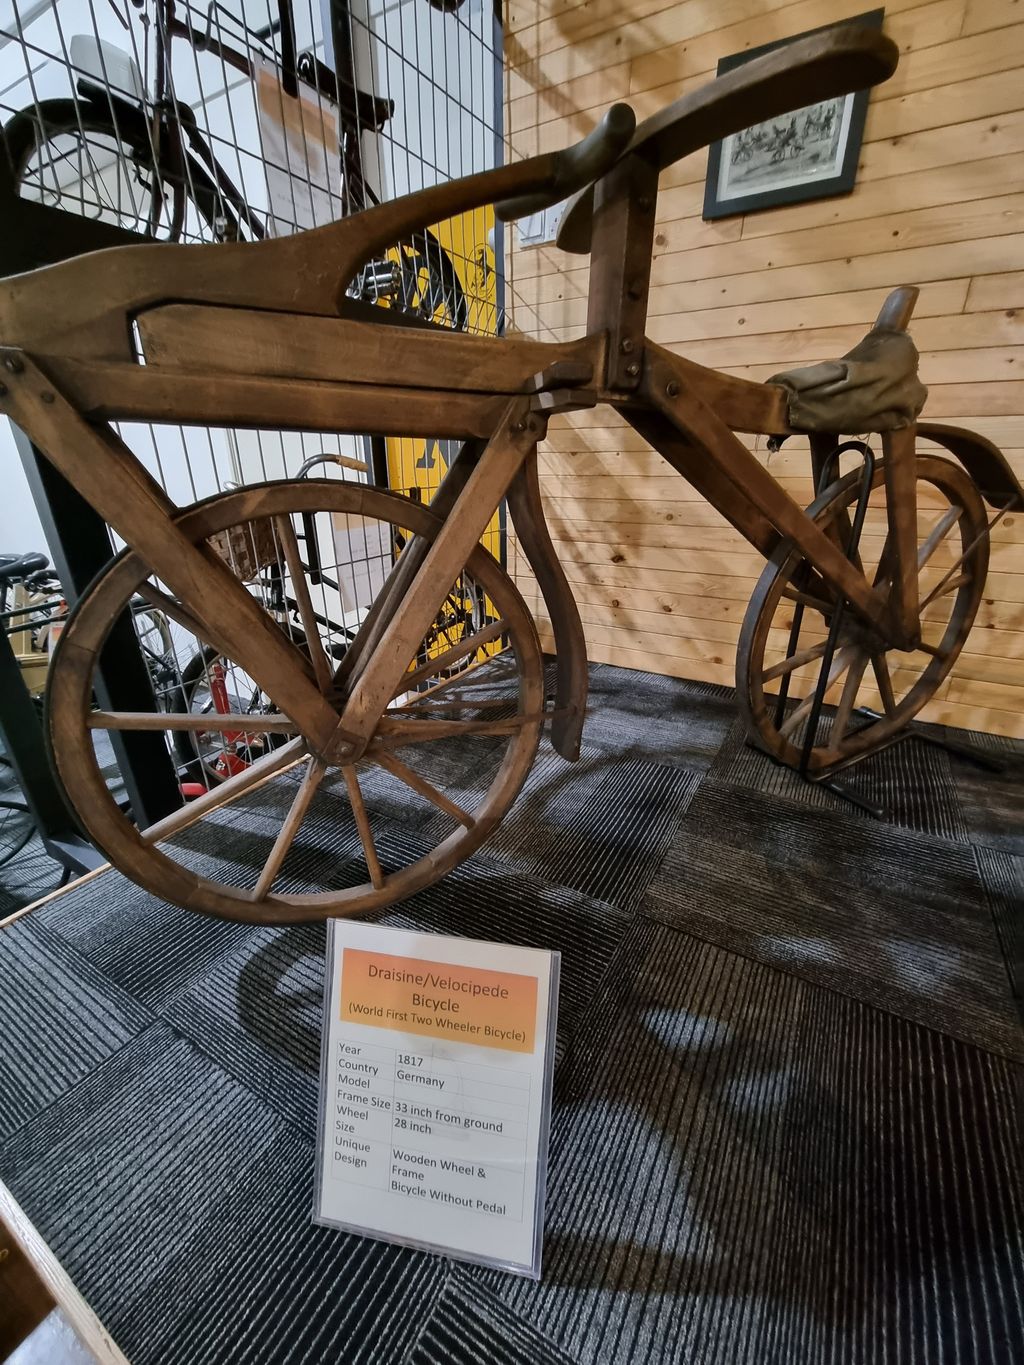 Malaya Bicycle Museum